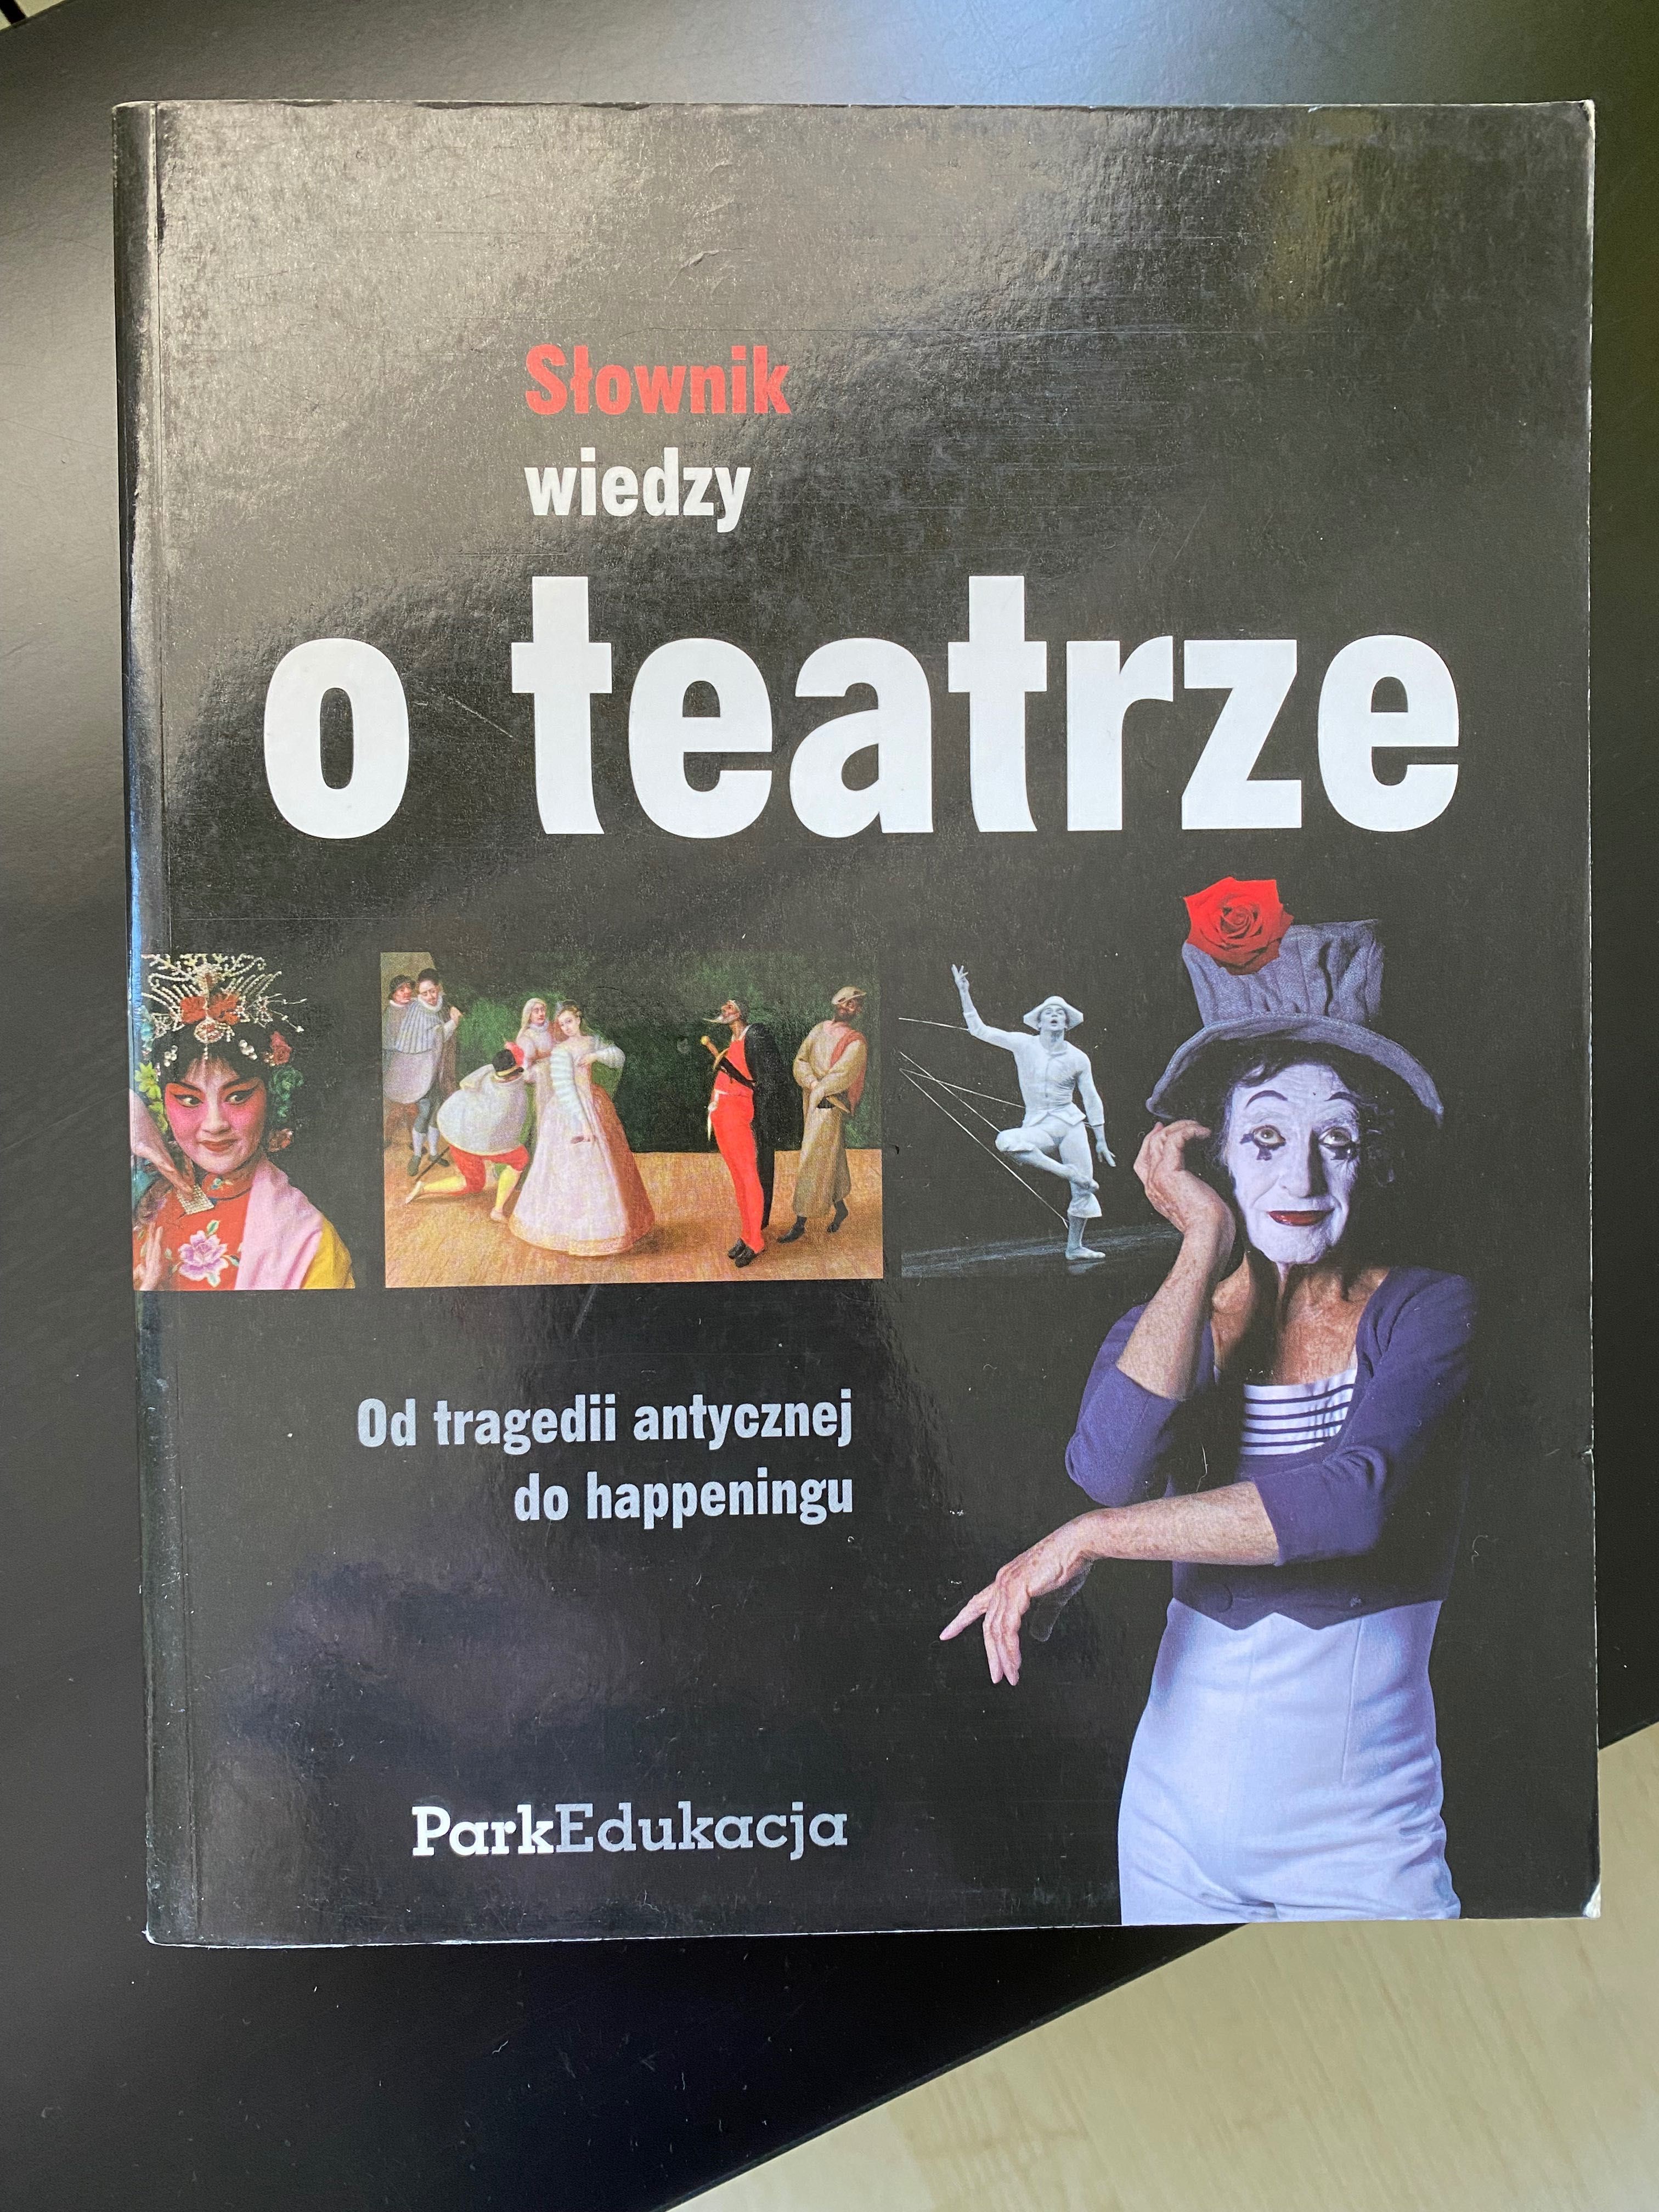 Słownik wiedzy o teatra - Dariusz Kosiński i inni